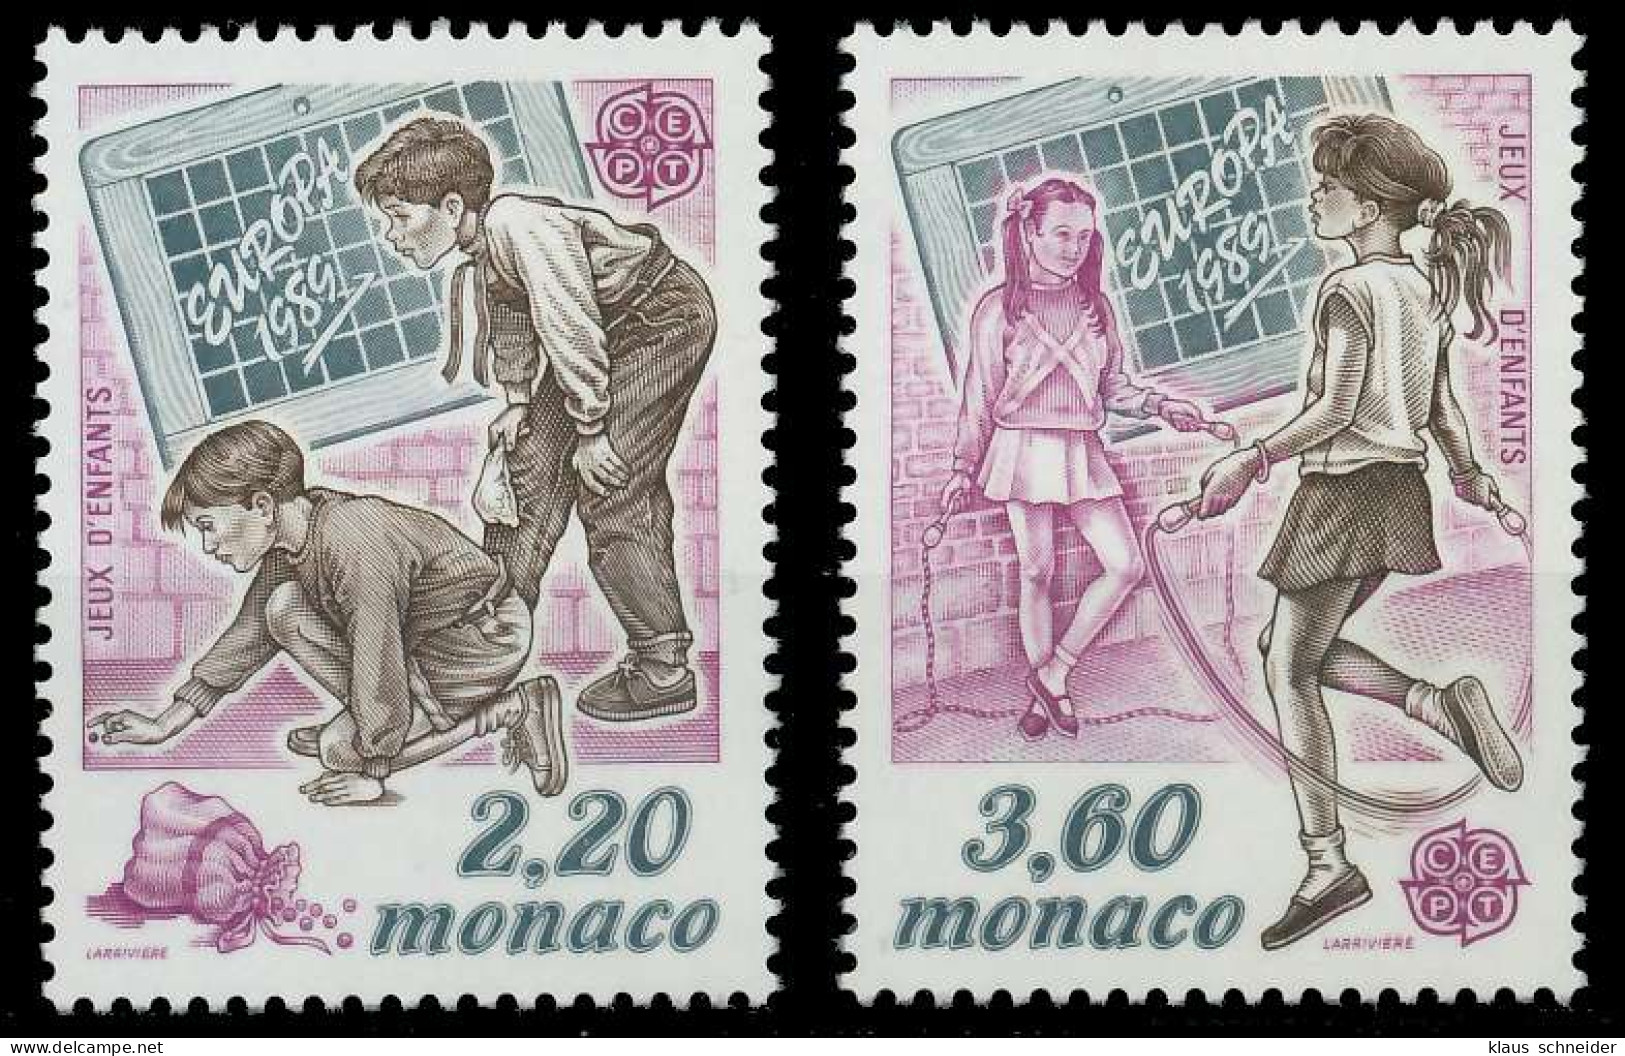 MONACO 1989 Nr 1919-1920 Postfrisch S1FD1D2 - Ungebraucht